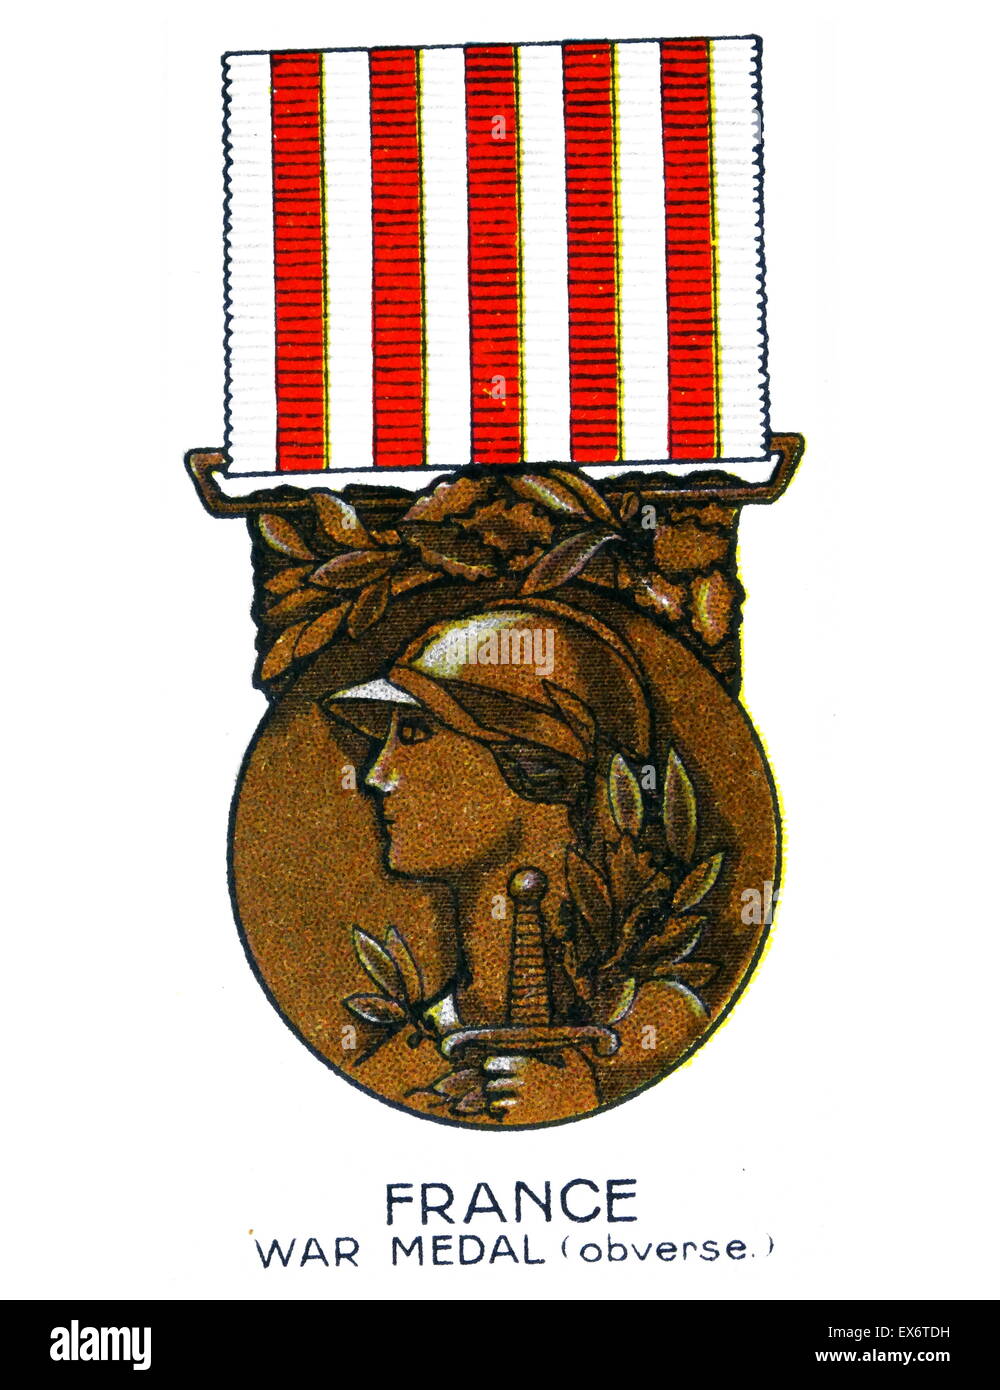 Médaille commémorative de la guerre 1914-1918 (avers) France a été attribué à des soldats et des marins pour participer à la Première Guerre mondiale 1. Banque D'Images